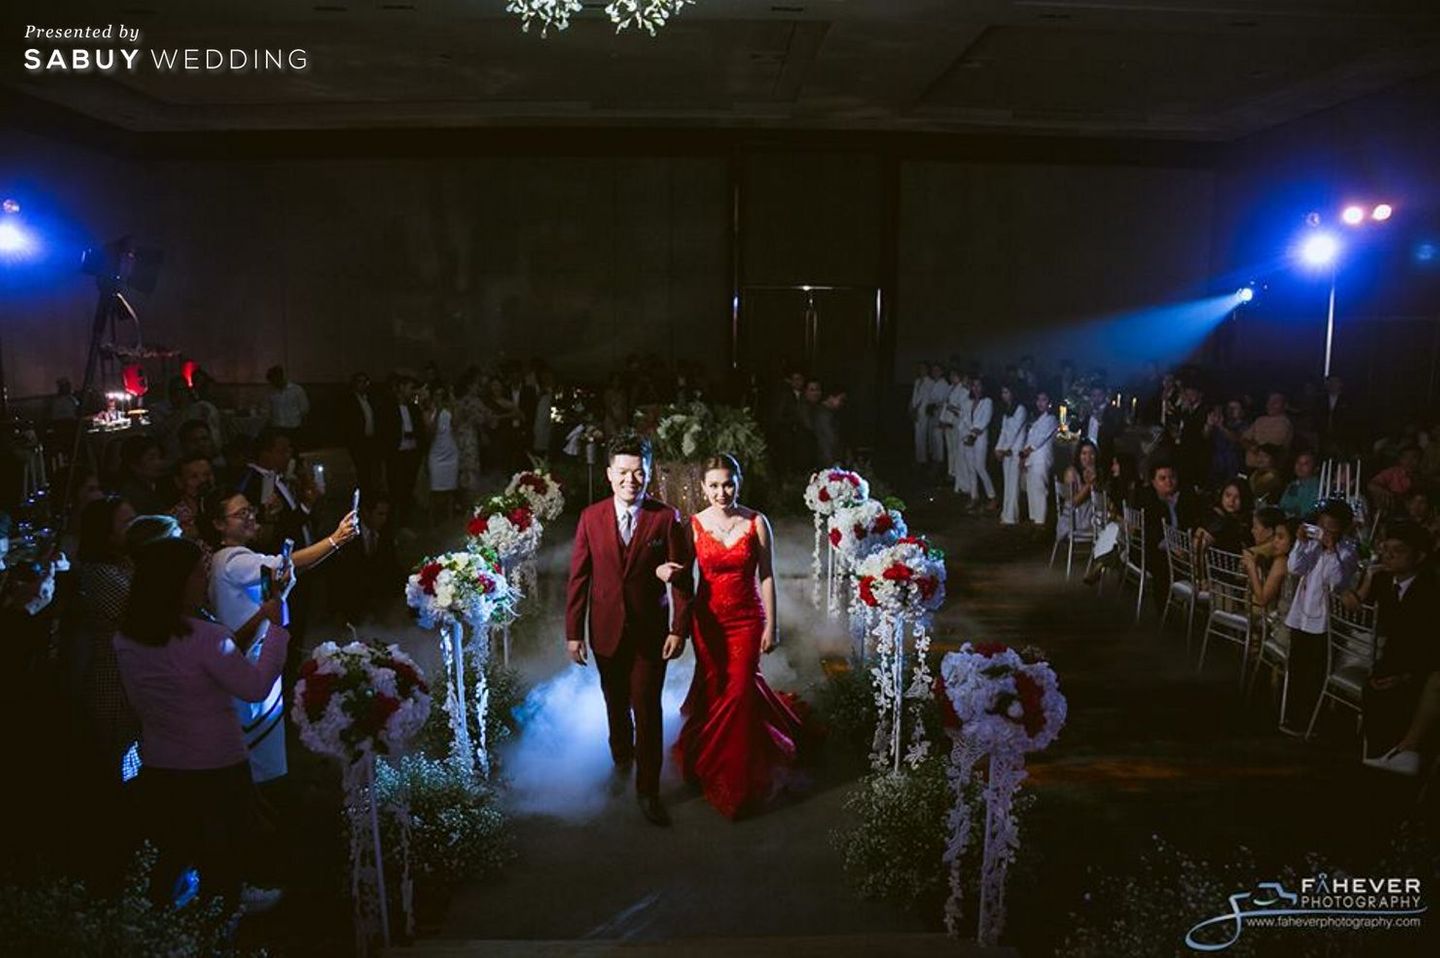 งานแต่งงาน,สถานที่แต่งงาน,สถานที่จัดงานแต่งงาน,The HALLS Bangkok,Fahever Photography,เจ้าบ่าว,เจ้าสาว ปาร์ตี้งานแต่งชุดแดงสุดแซ่บ แสงสีจัดเต็ม by Fahever Photography